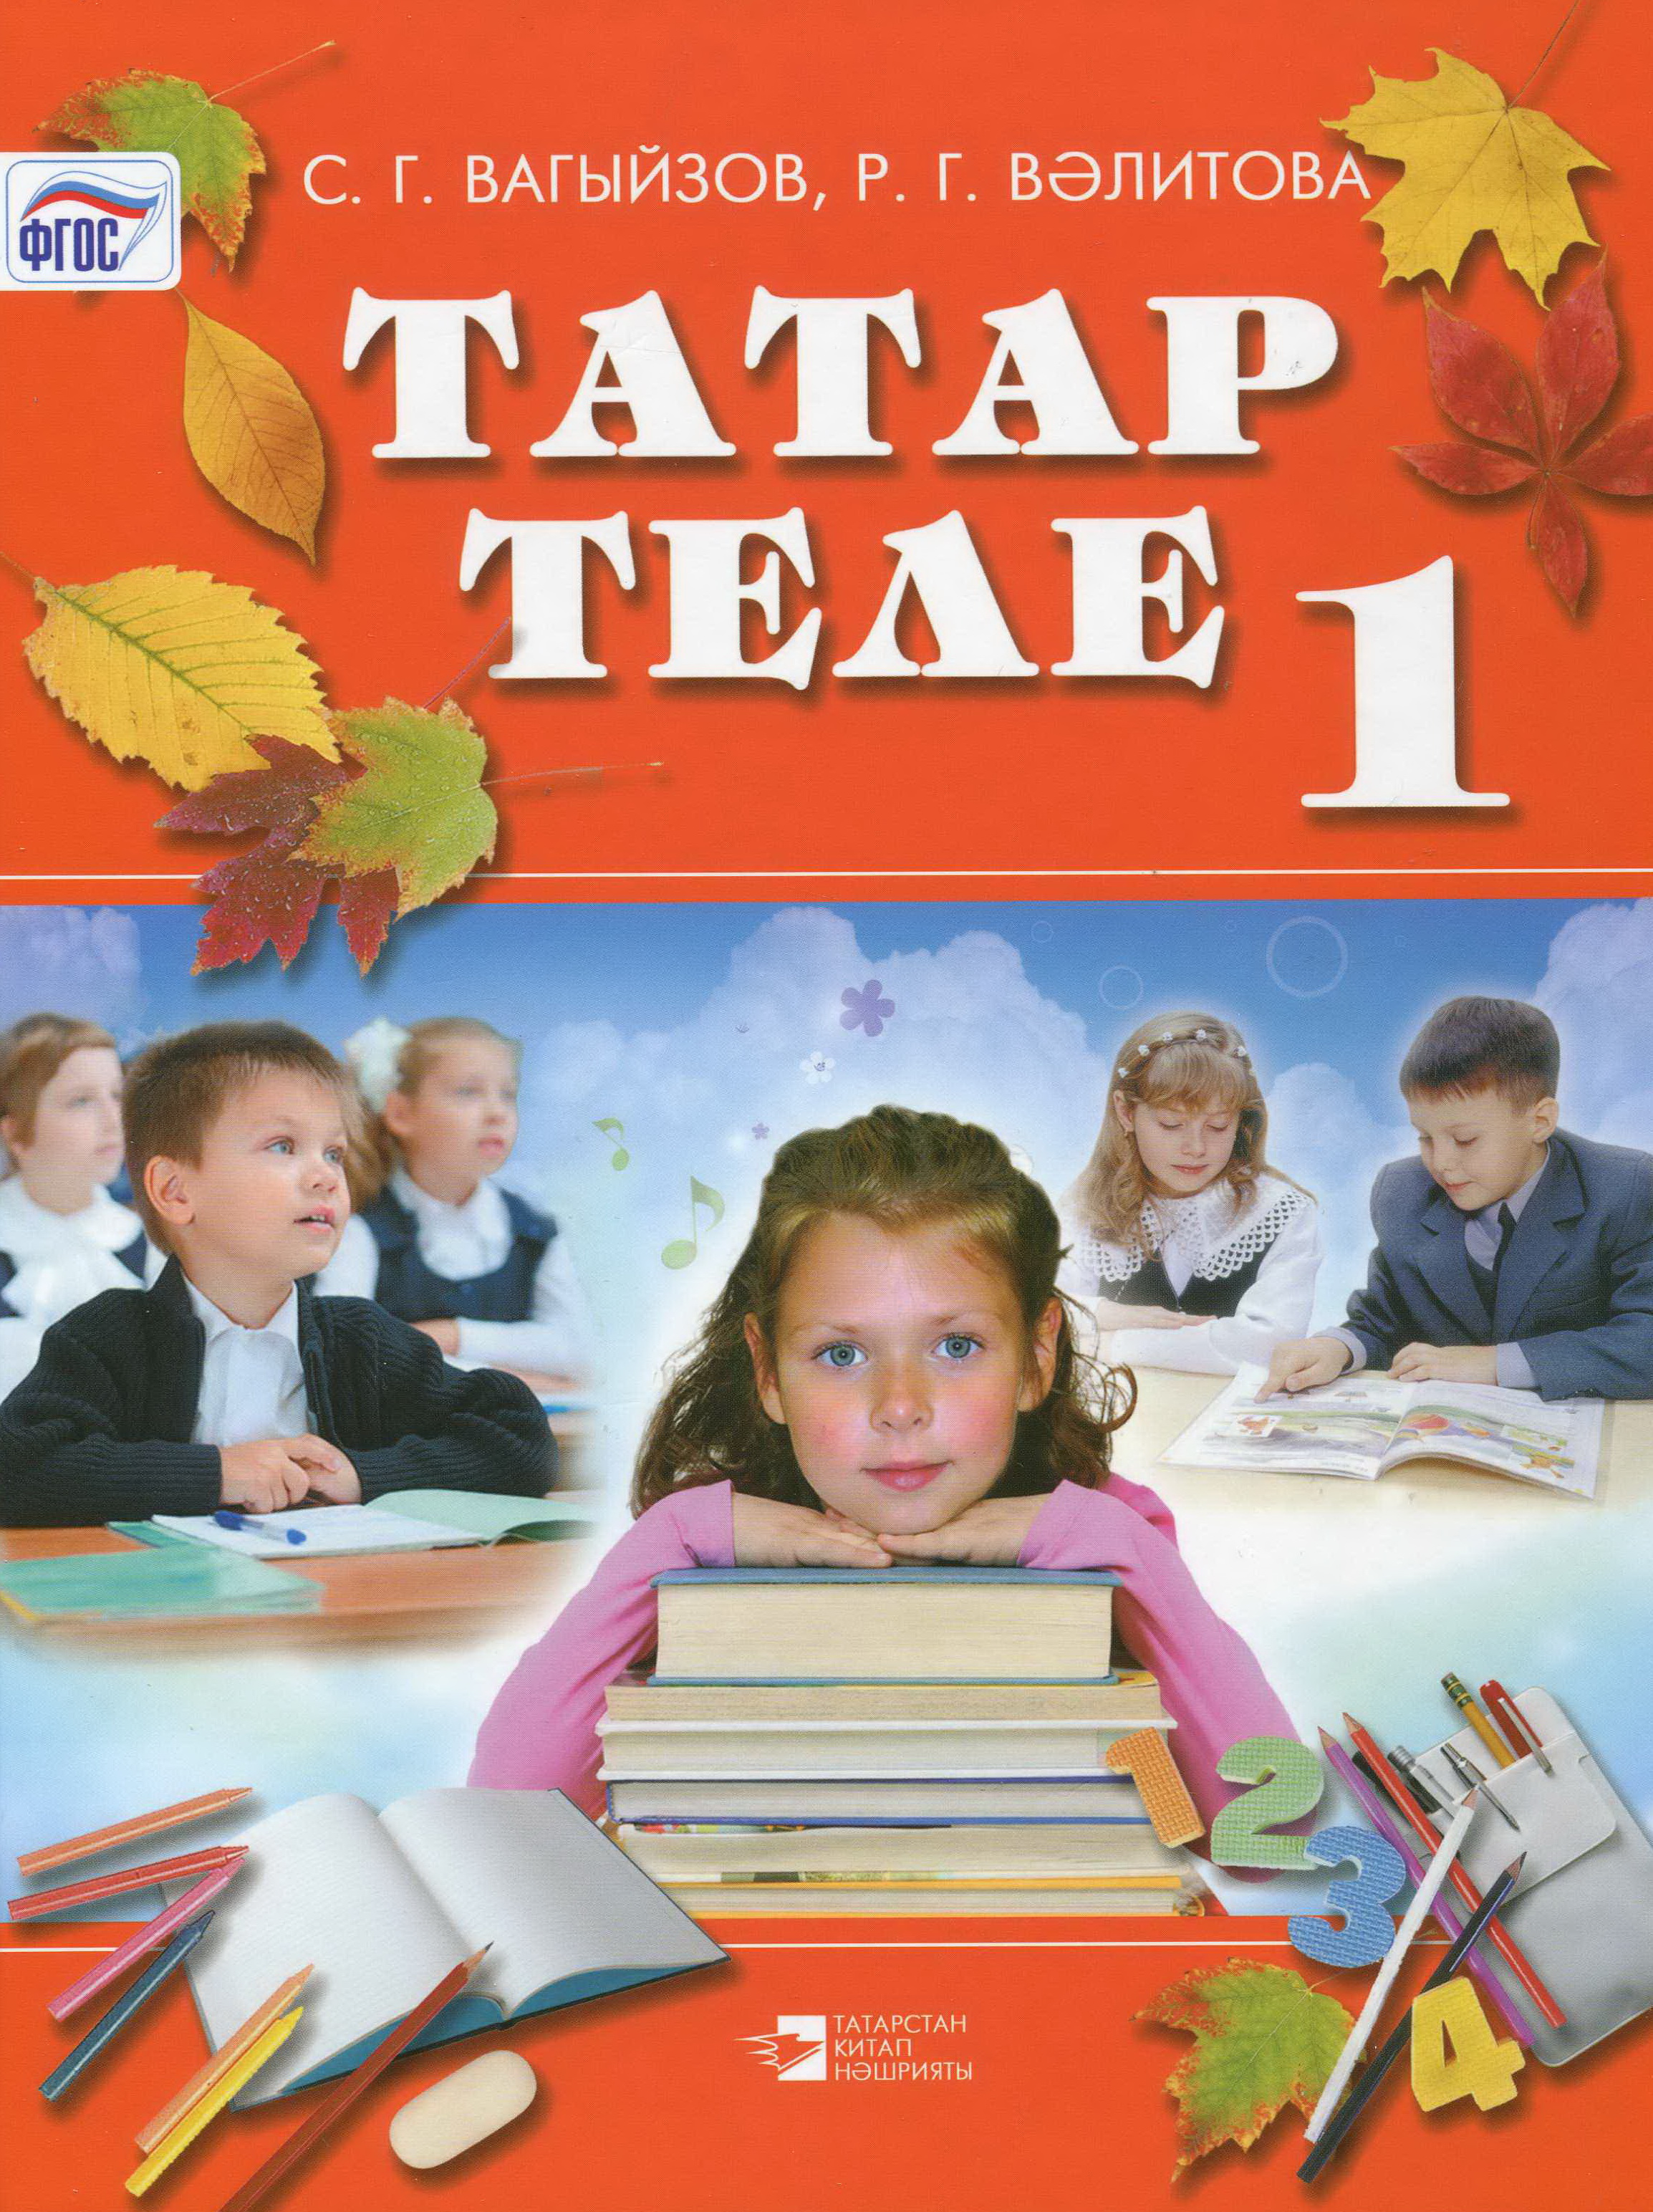 Татарский язык 4 класс учебник 2 часть